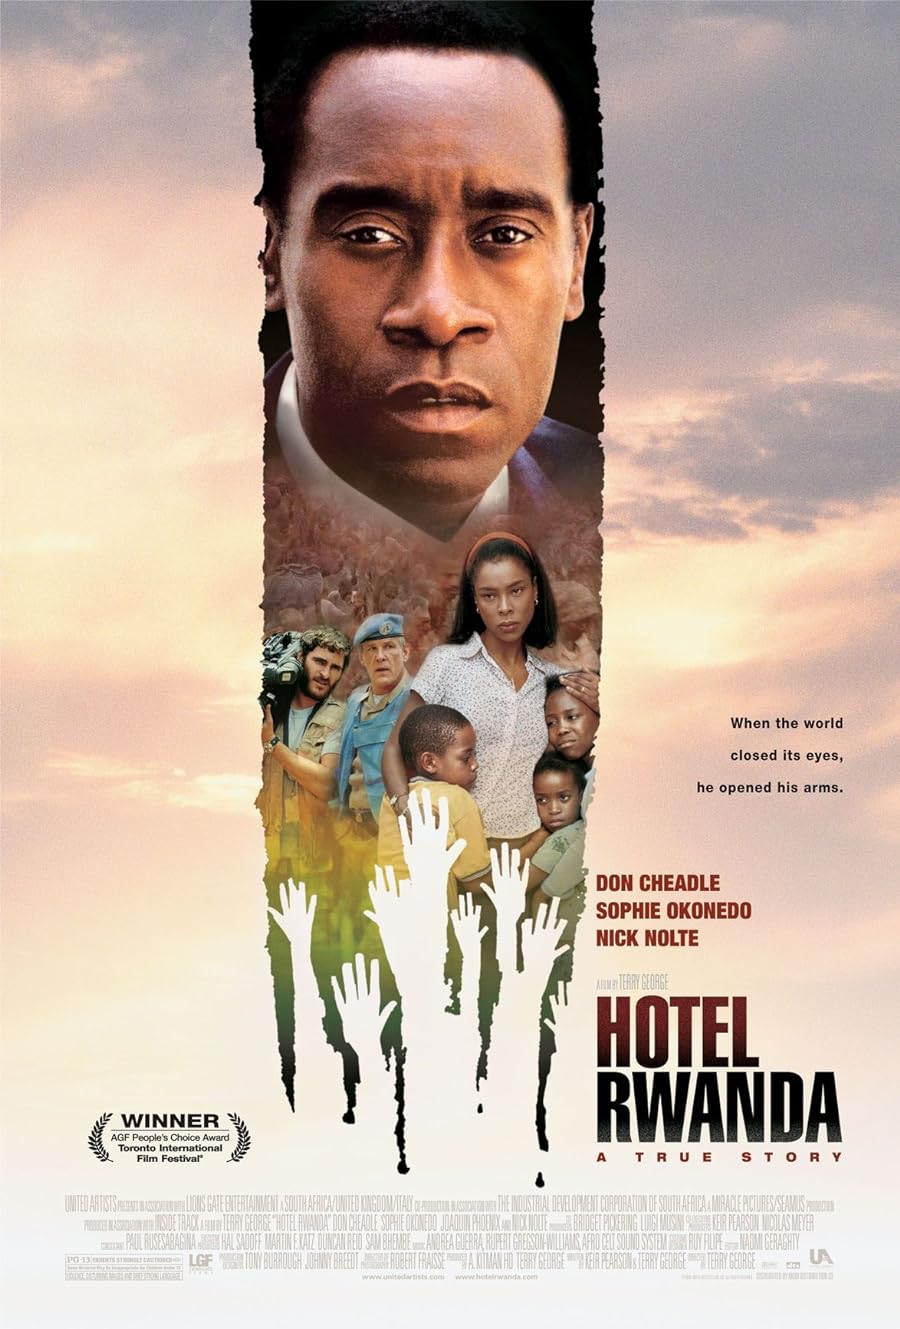 دانلود فیلم Hotel Rwanda 2004